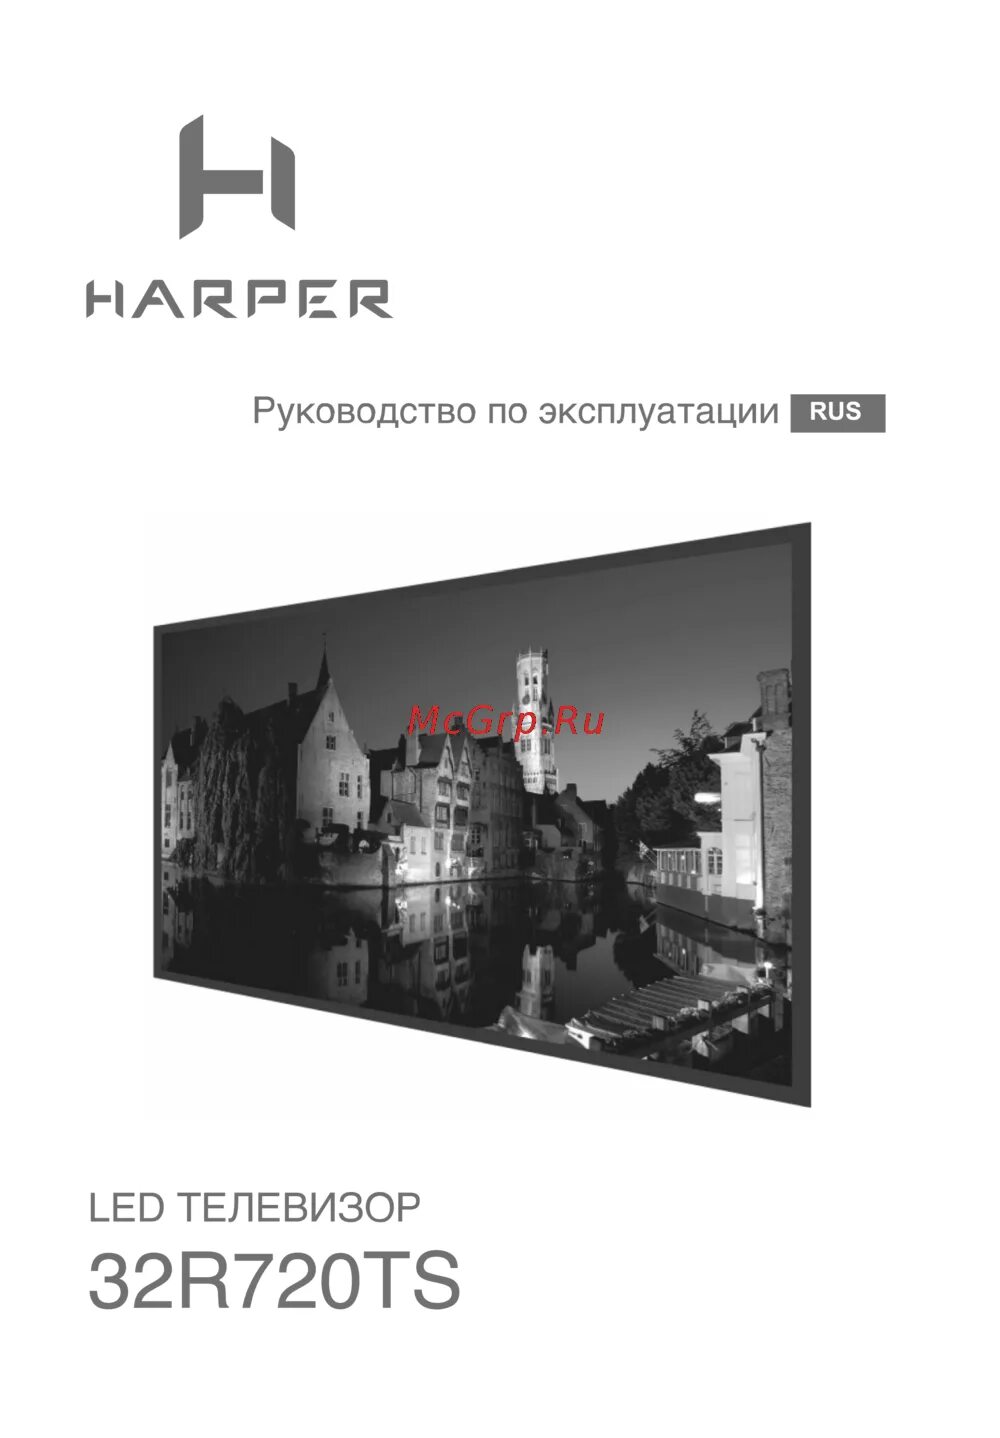 Harper 32r720ts. Телевизор Харпер инструкция по эксплуатации.